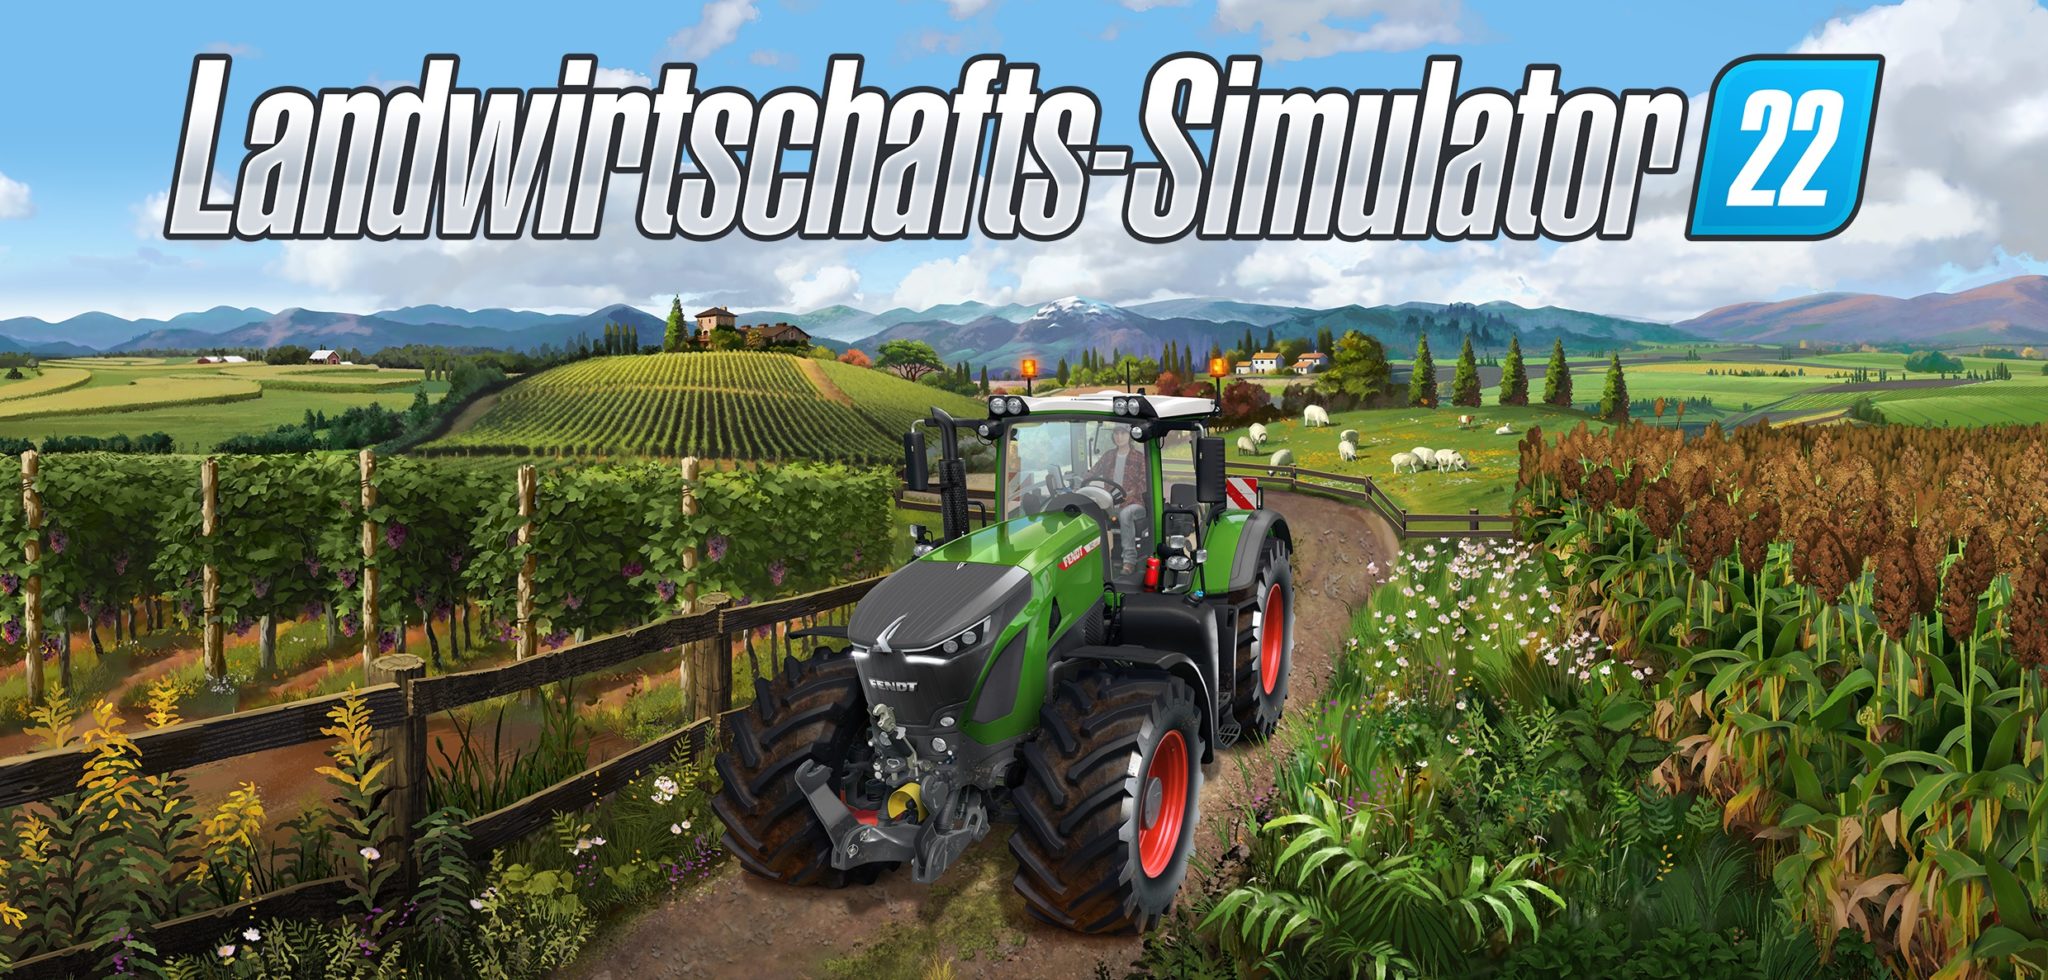 Landwirtschafts Simulator 22 Trailer Stellt Neue Karte Elmcreek Vor